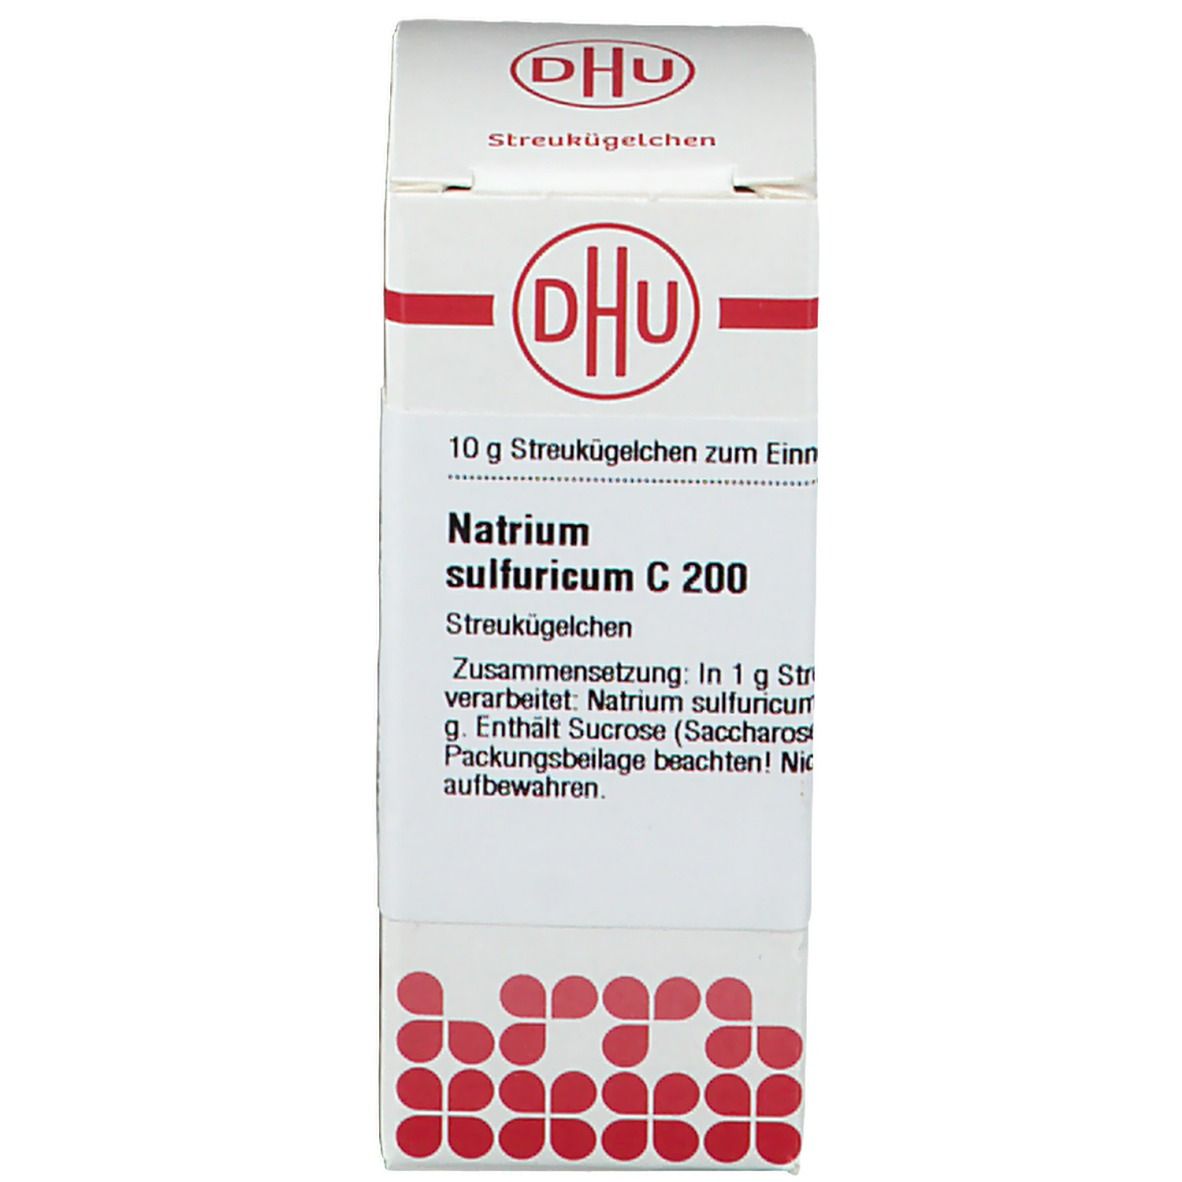 DHU Natrium Sulfuricum C200